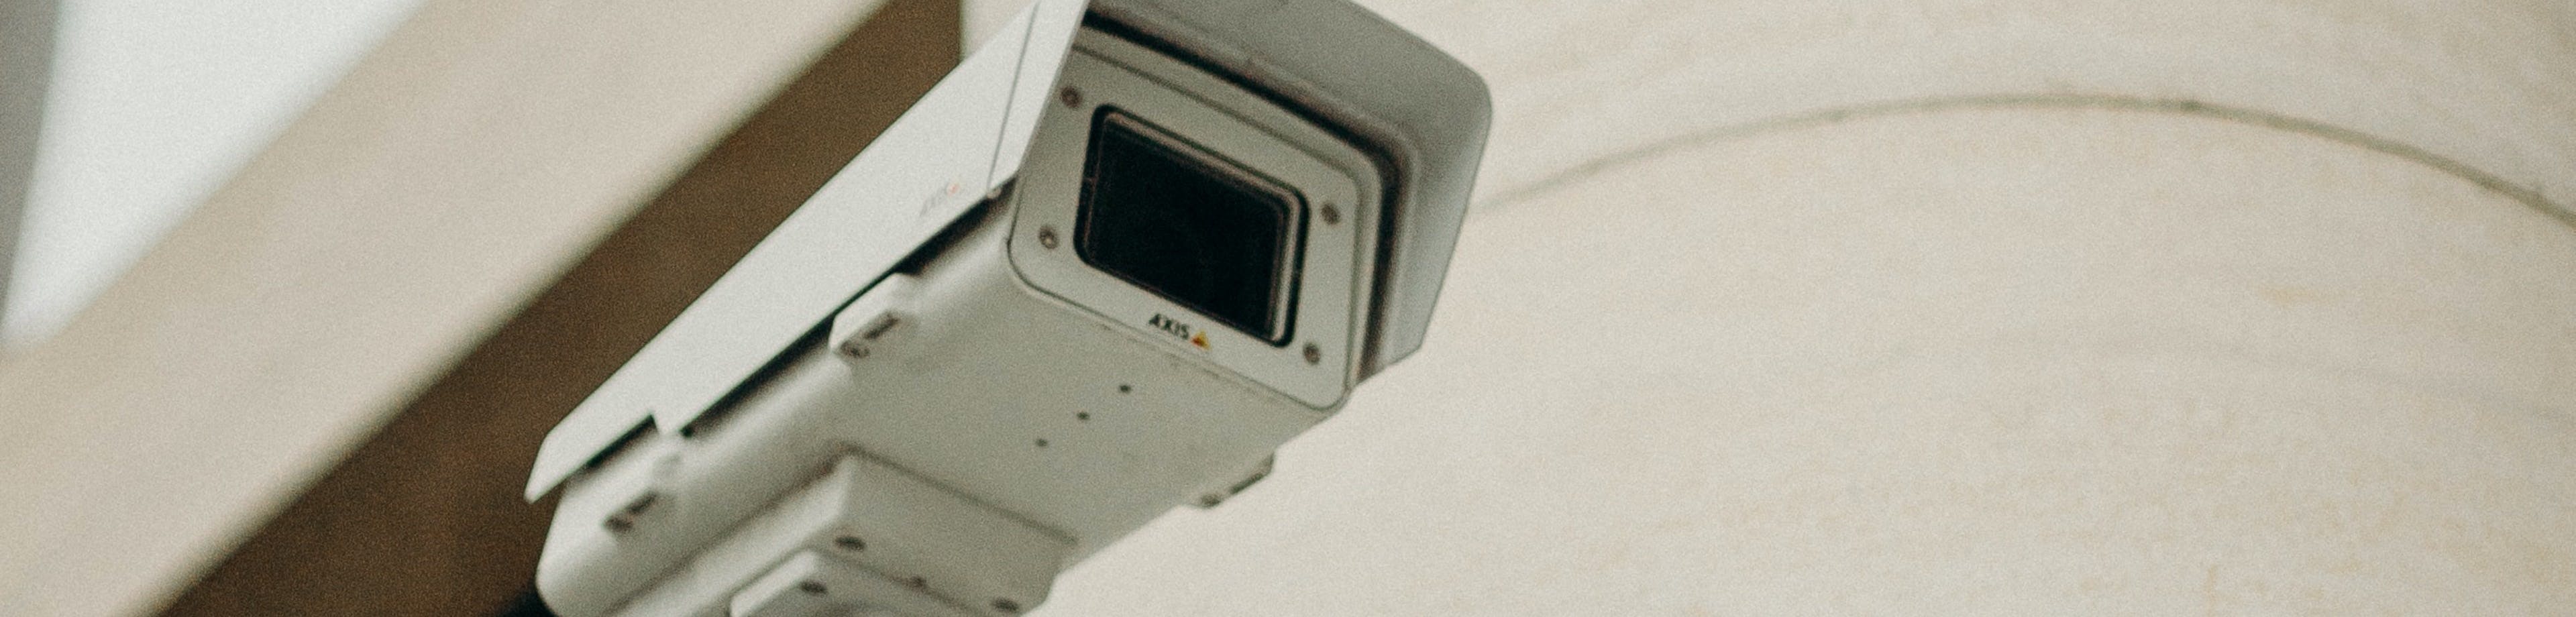 Beveiligingscamera aan de buitenkant van een bedrijfspand